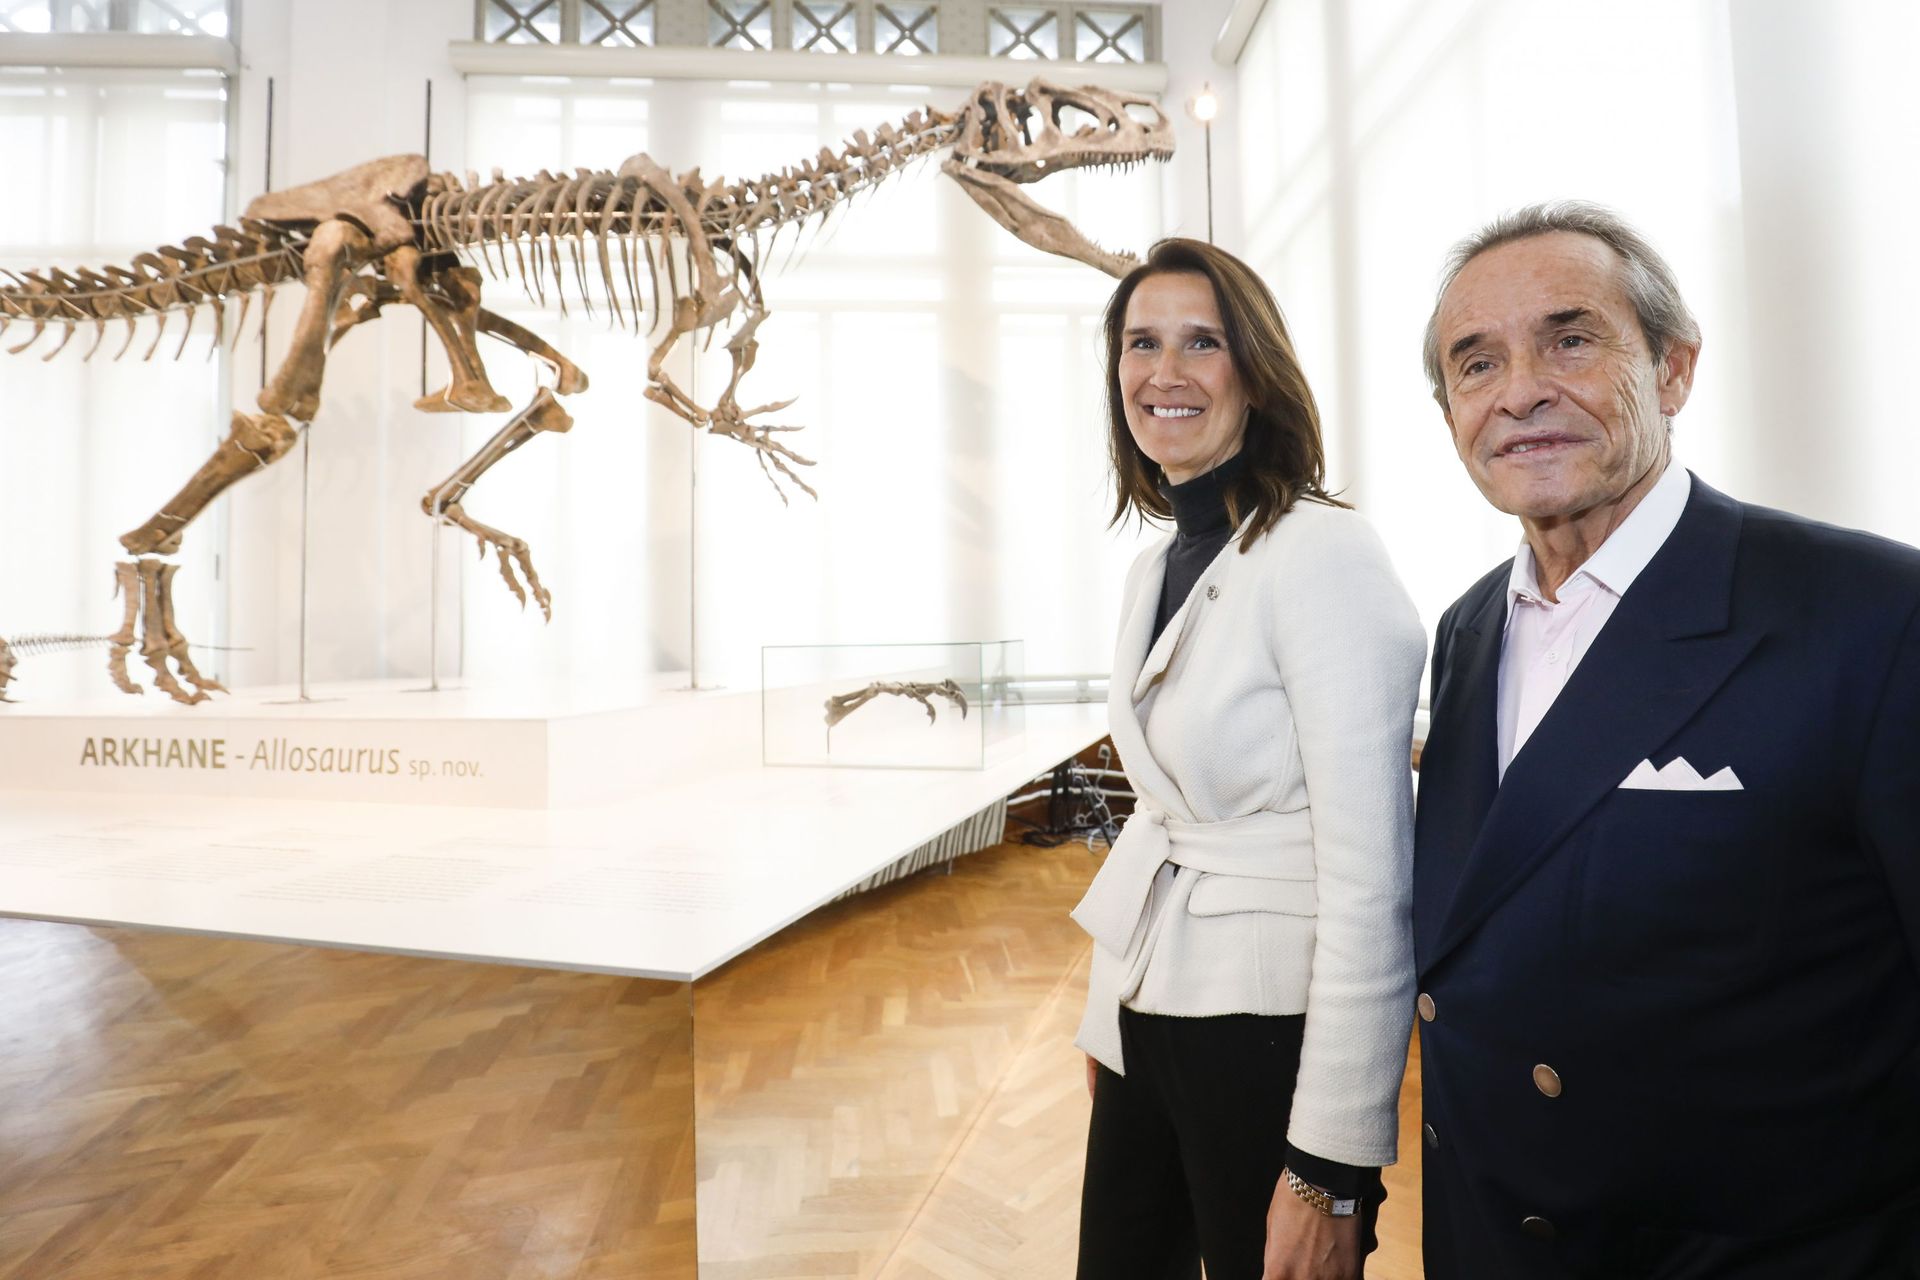 La Première Ministre Sophie Wilmès, alors ministre du budget, au Musée des Sciences Naturelles, avec Jacky Ickx, en 2019 